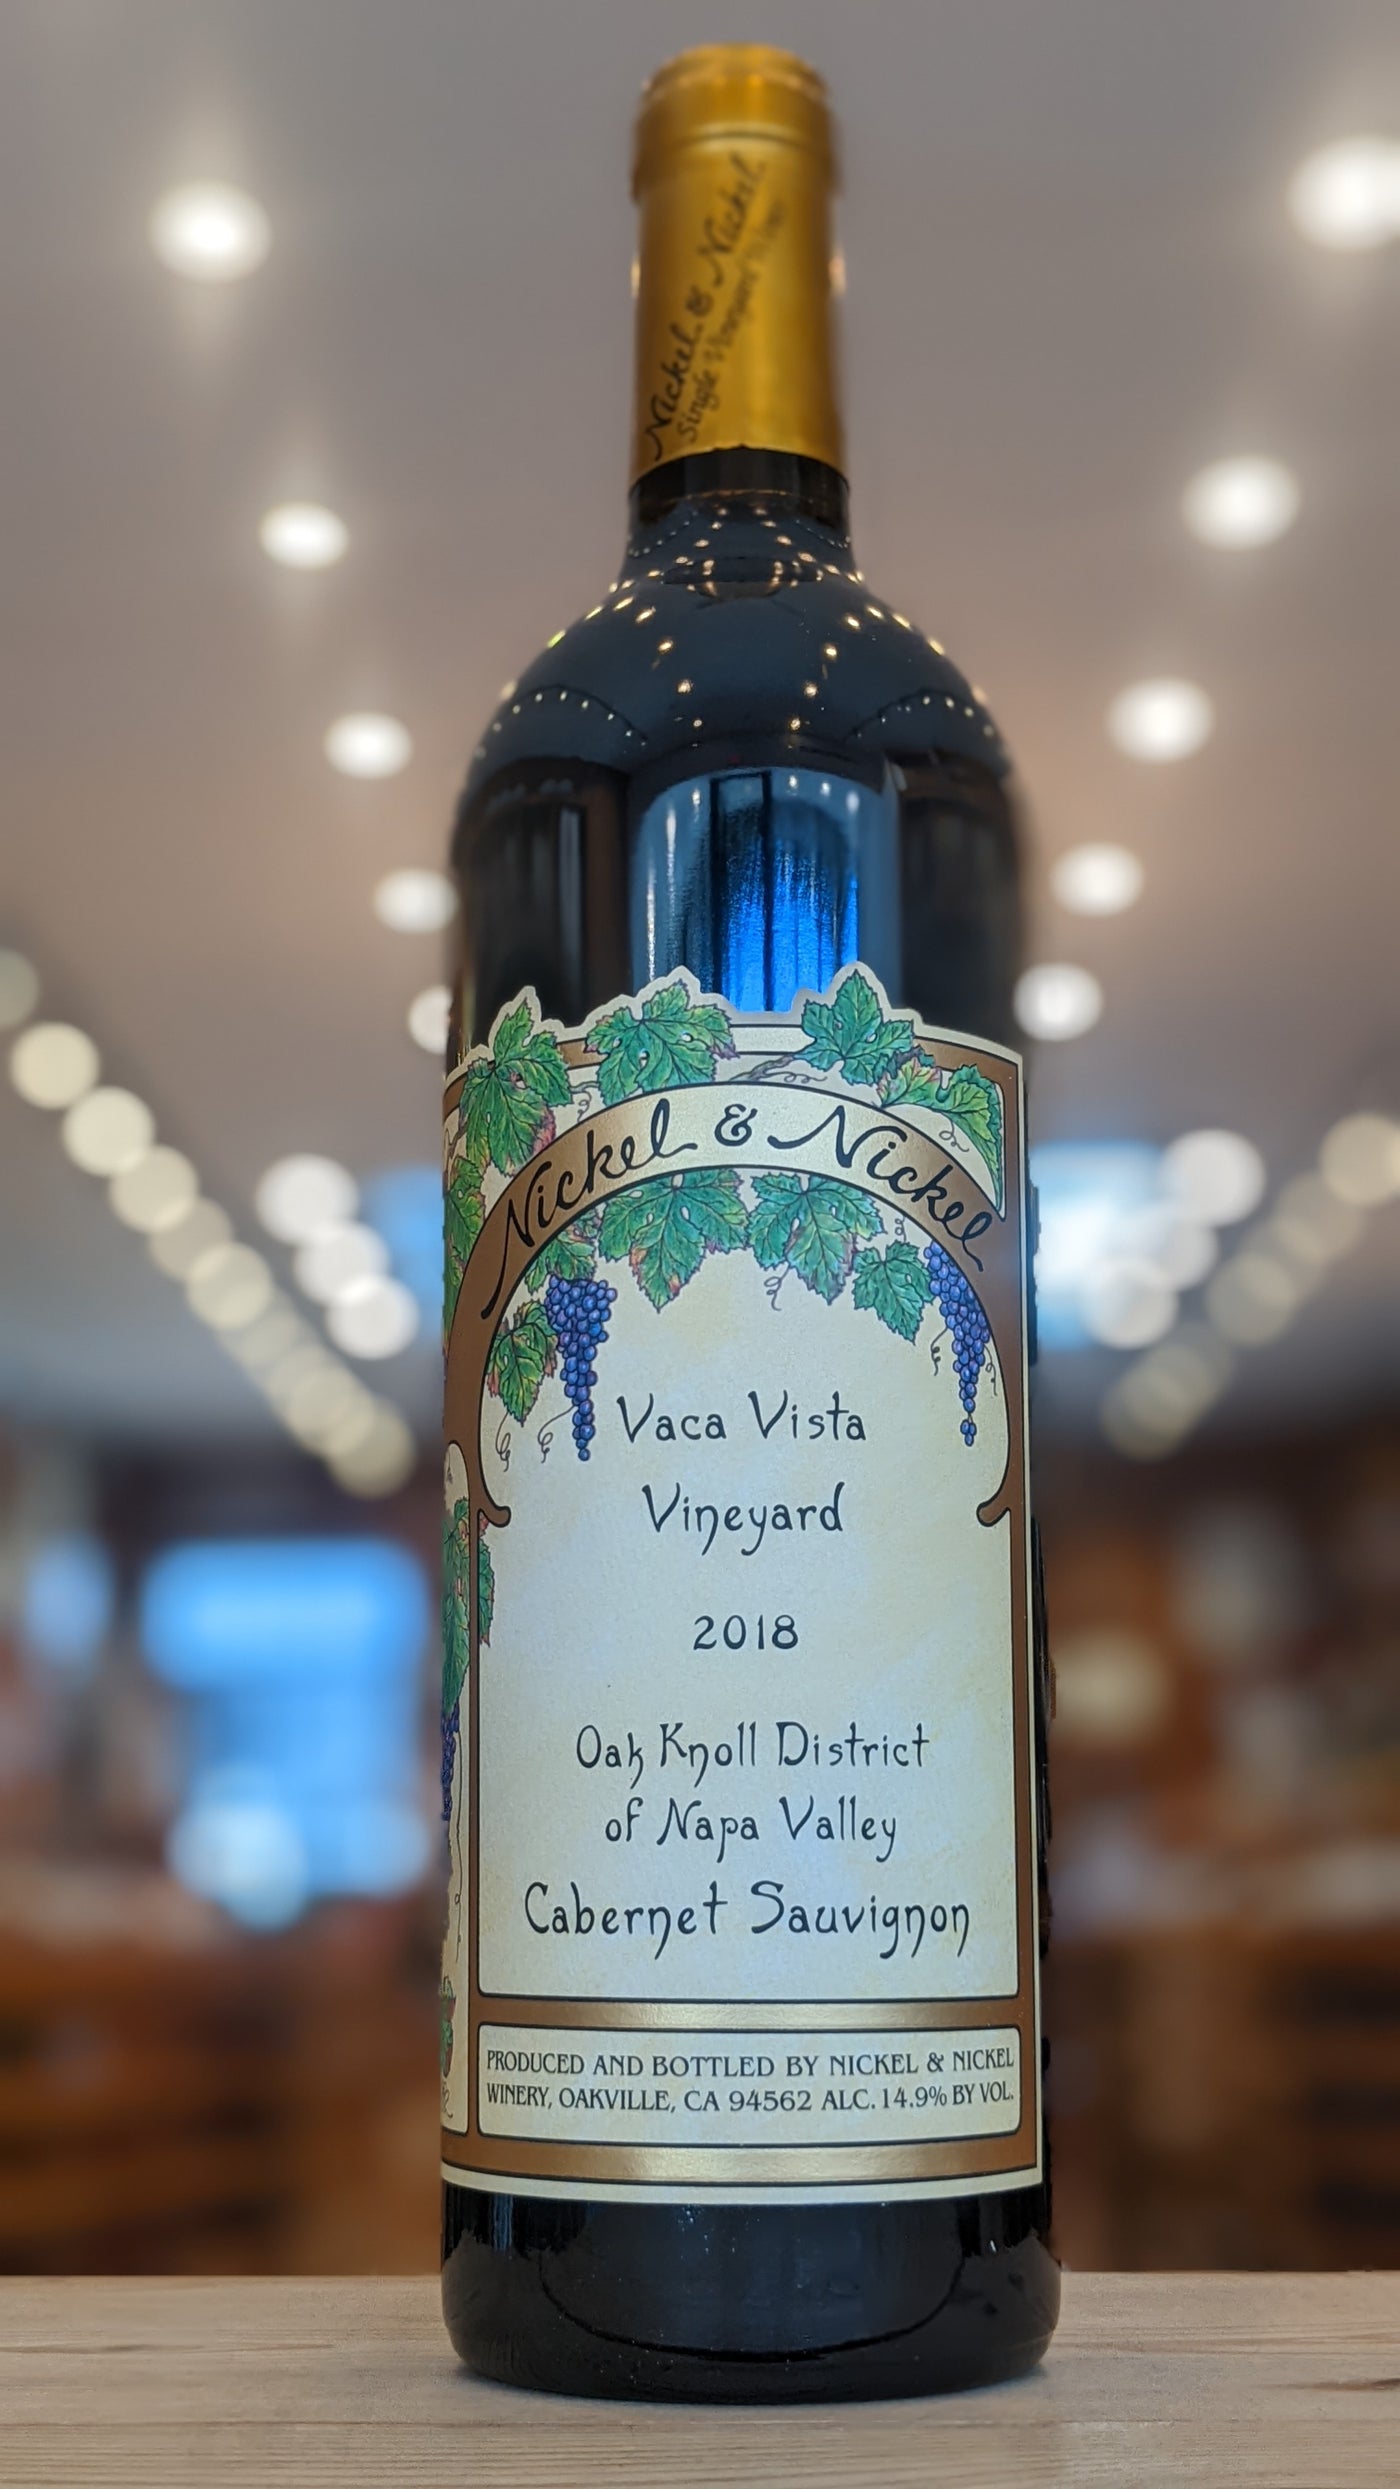 Nickel & Nickel Vaca Vista Vineyard Cabernet Sauvignon 2018